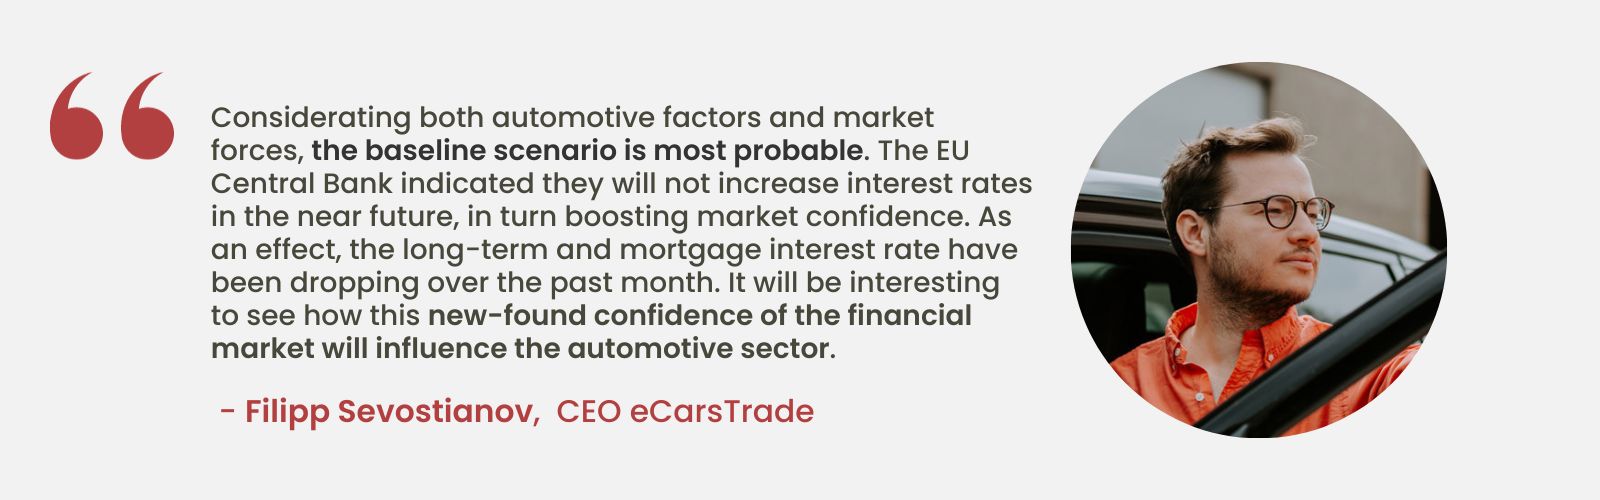 Analiza ekspercka przeprowadzona przez Filippa Sevostianova, dyrektora generalnego eCarsTrade, omawiająca wpływ stabilnych stóp procentowych w UE na zaufanie rynku i potencjalny wpływ na branżę motoryzacyjną.